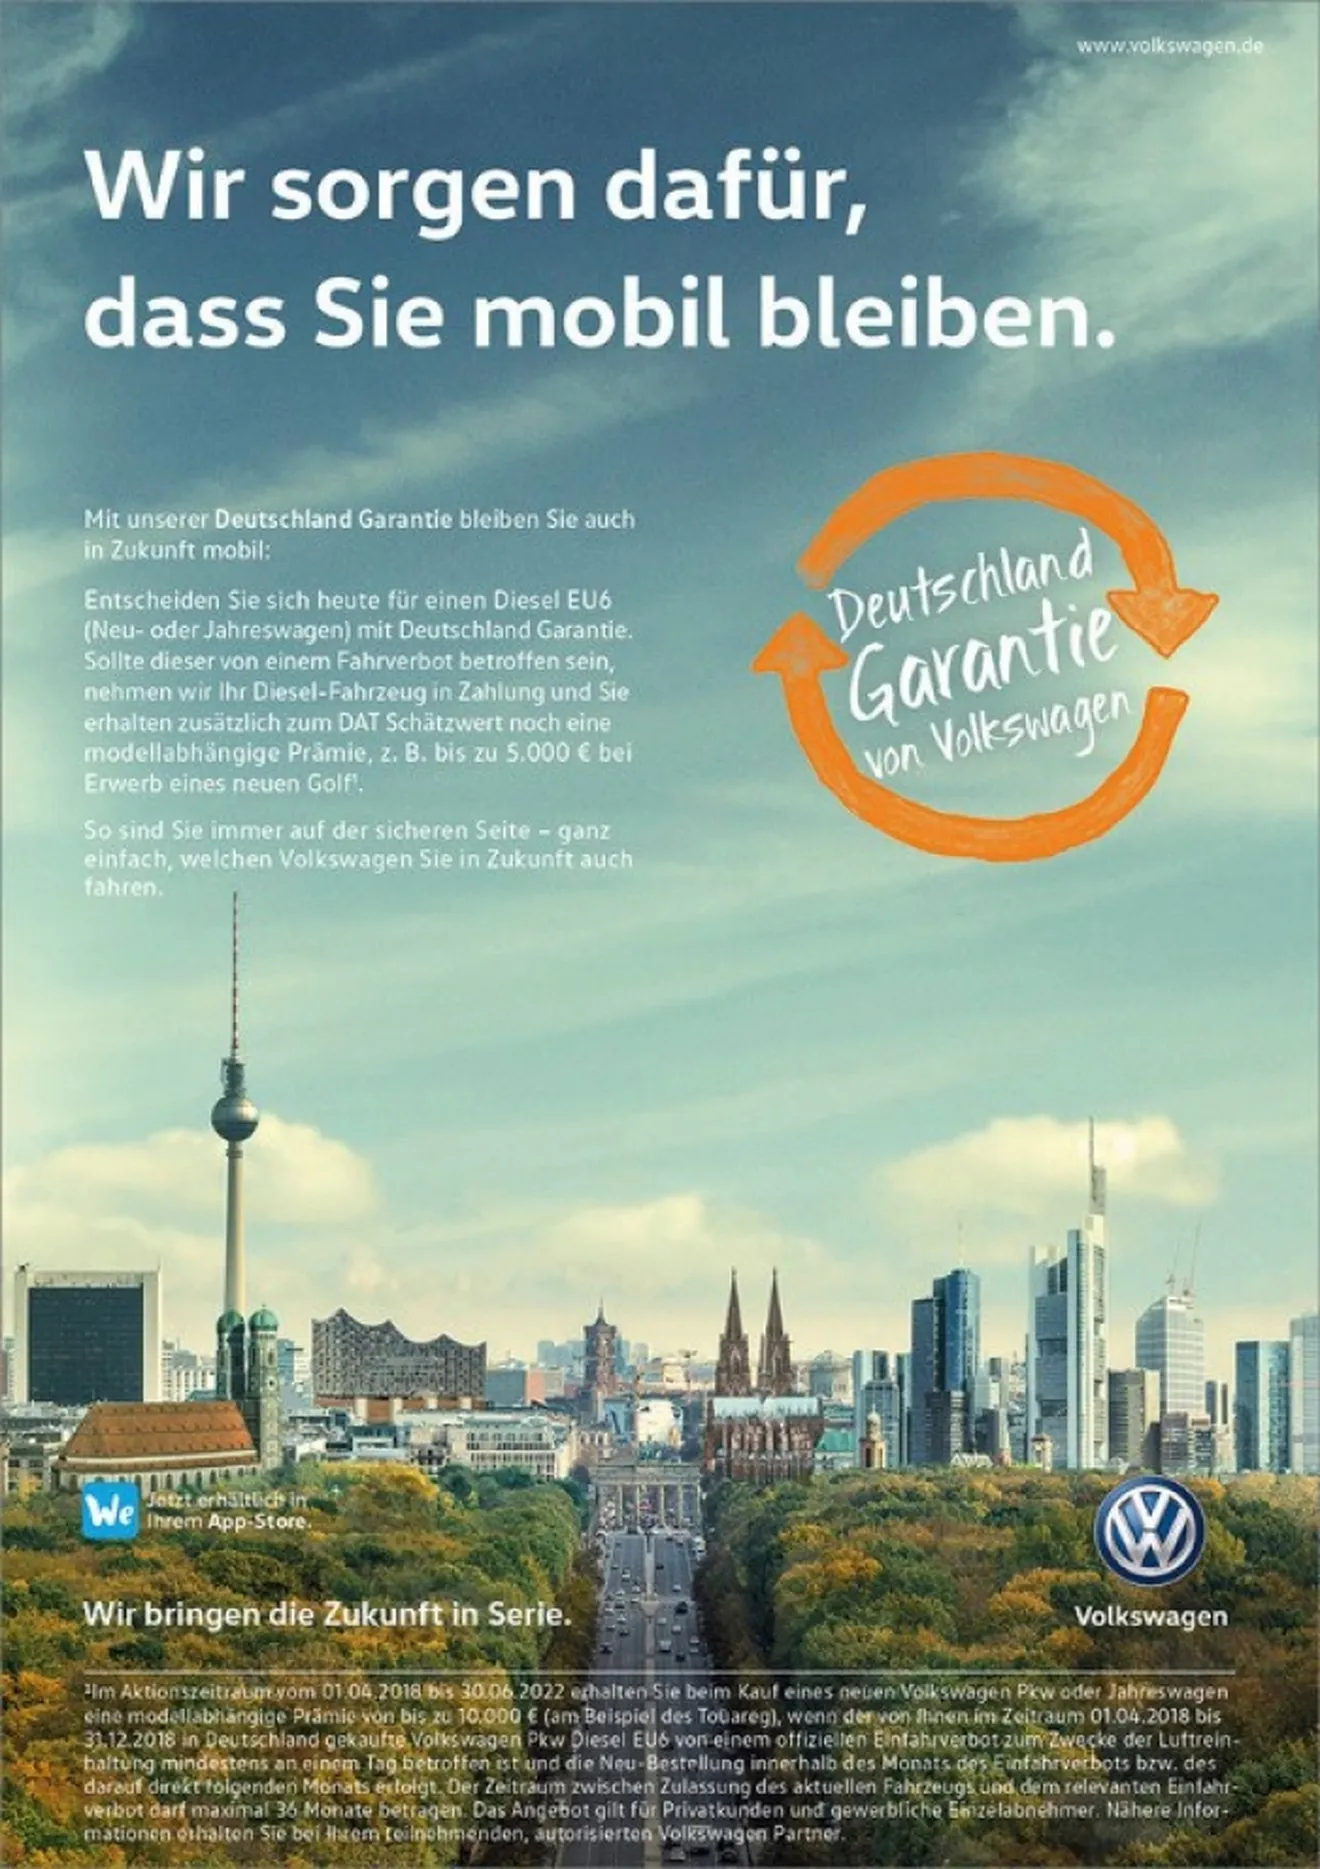 Recompras garantizadas de los nuevos diésel en Alemania, ¿una medida desesperada?